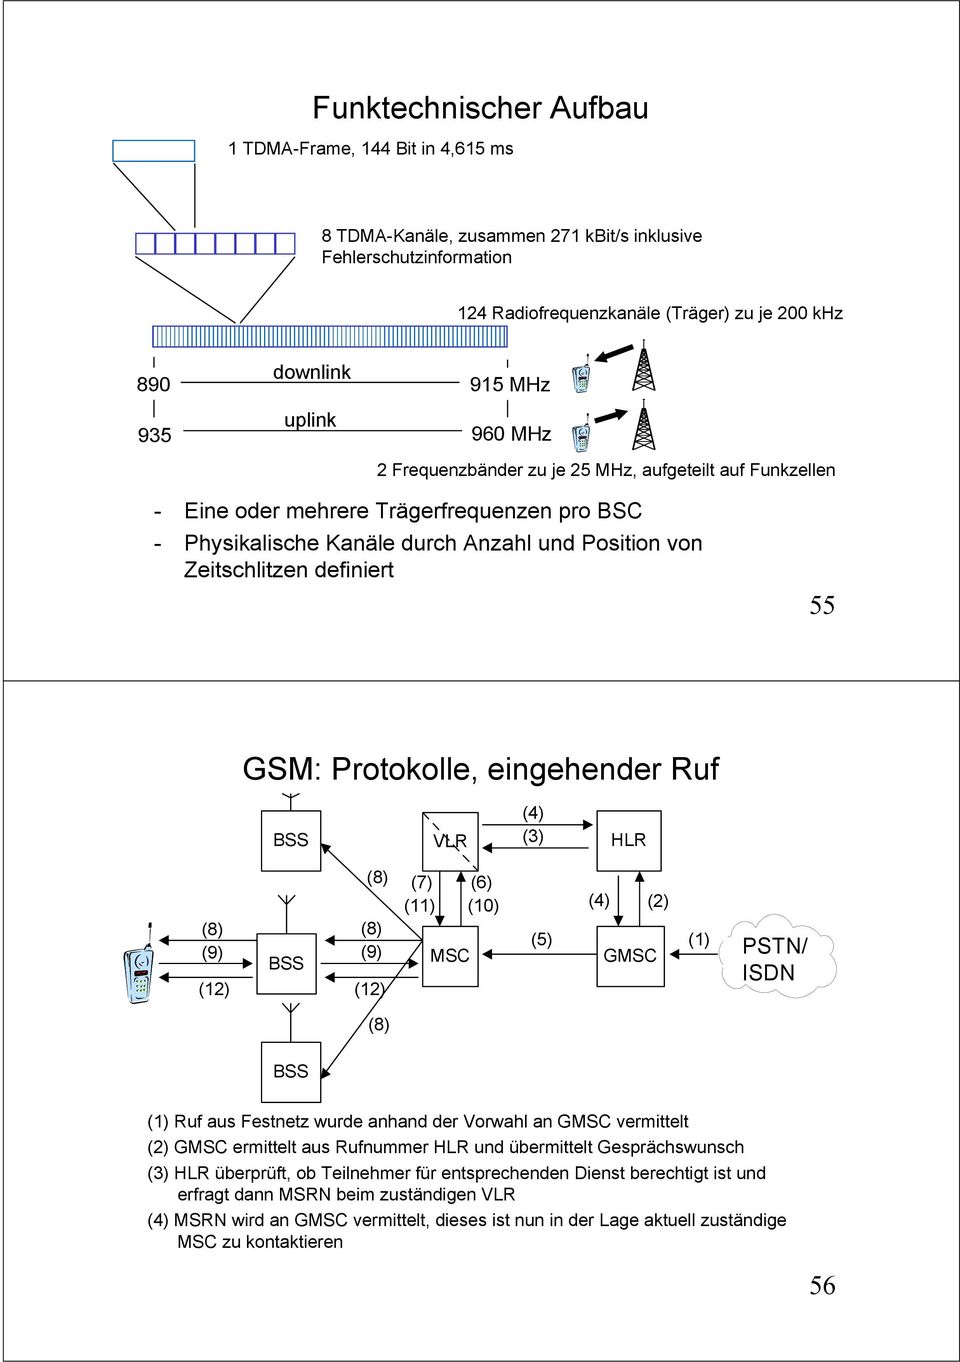 GSM: Protokolle, eingehender Ruf VLR (4) (3) HLR (9) (12) (9) (12) (7) (11) MSC (6) (10) (5) (4) GMSC (2) (1) PSTN/ ISDN (1) Ruf aus Festnetz wurde anhand der Vorwahl an GMSC vermittelt (2) GMSC